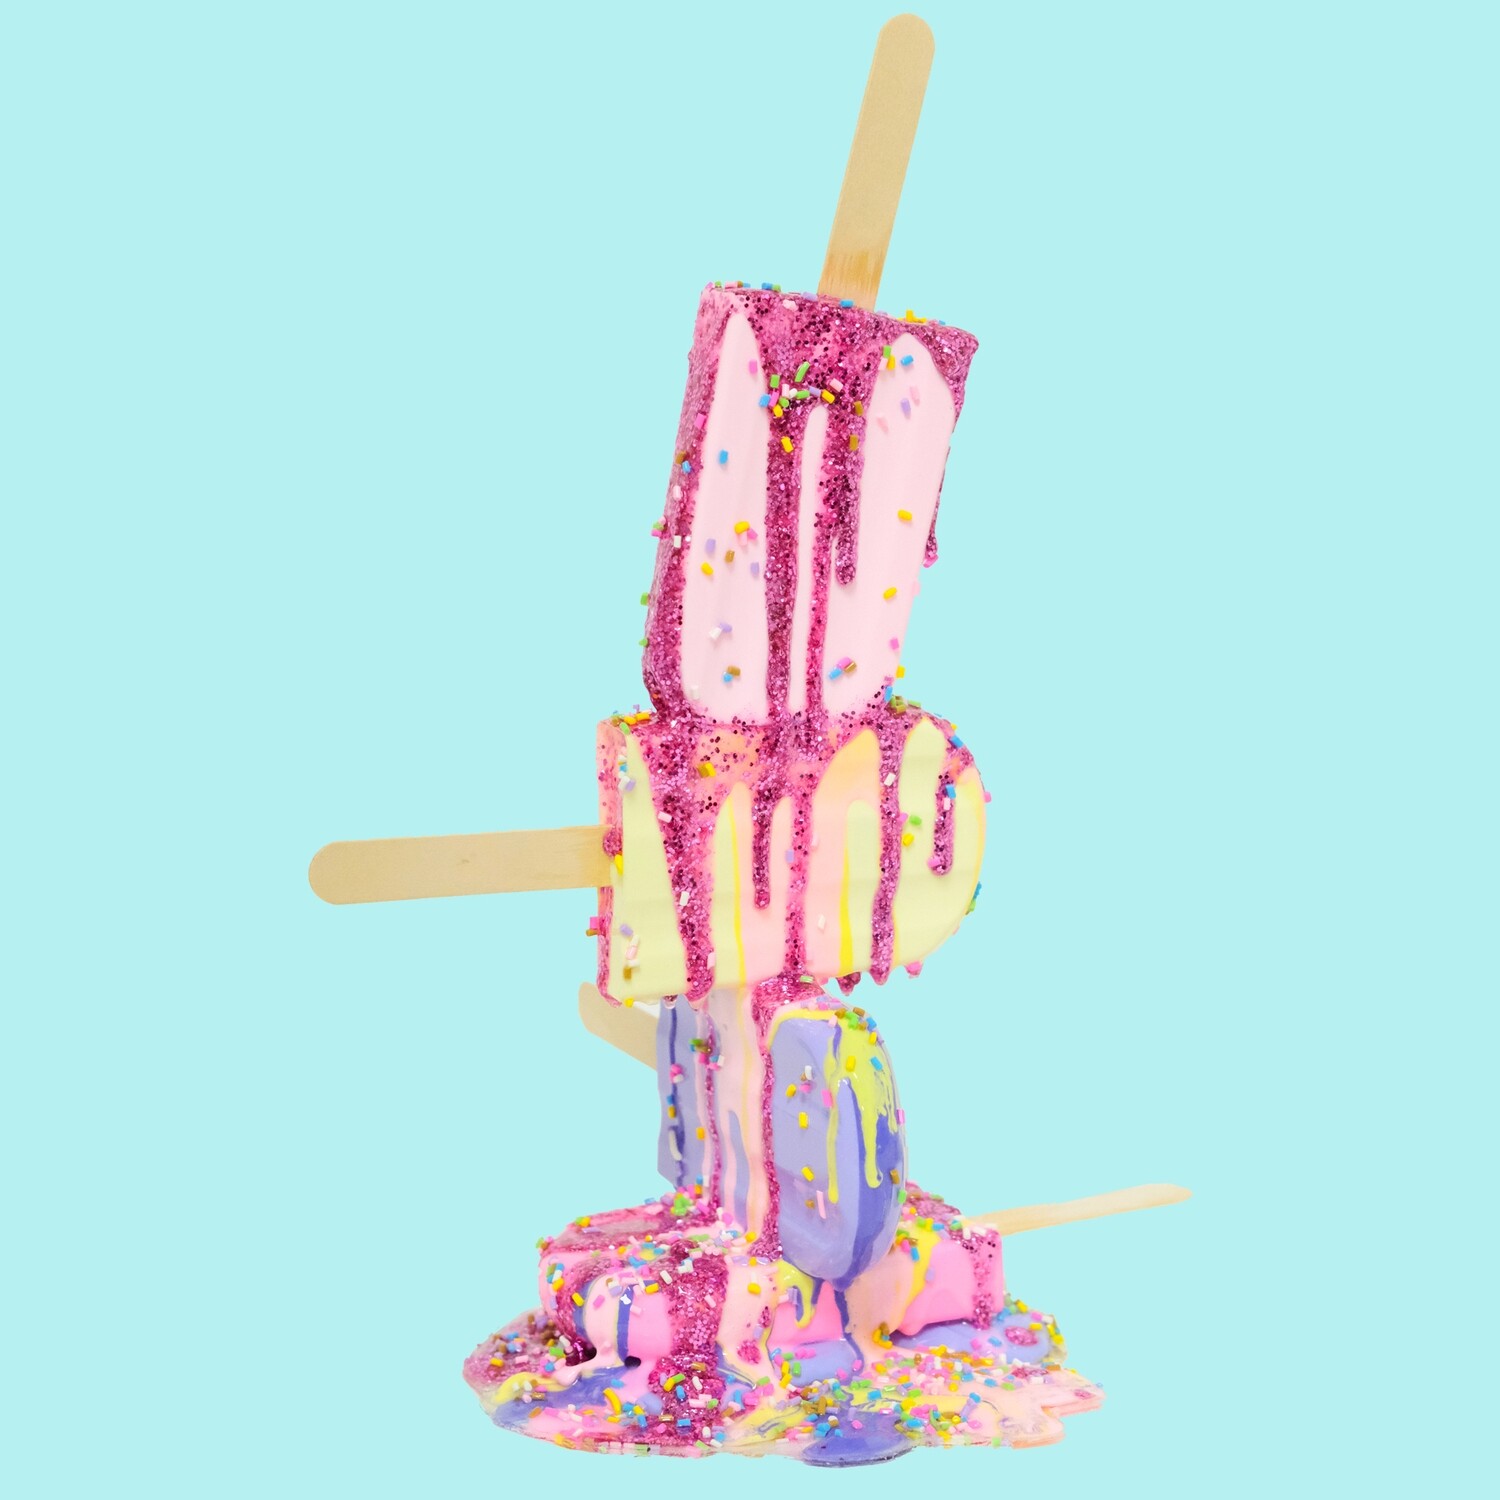 Melting Popsicle Art - Get Happy - Original Melting Pops